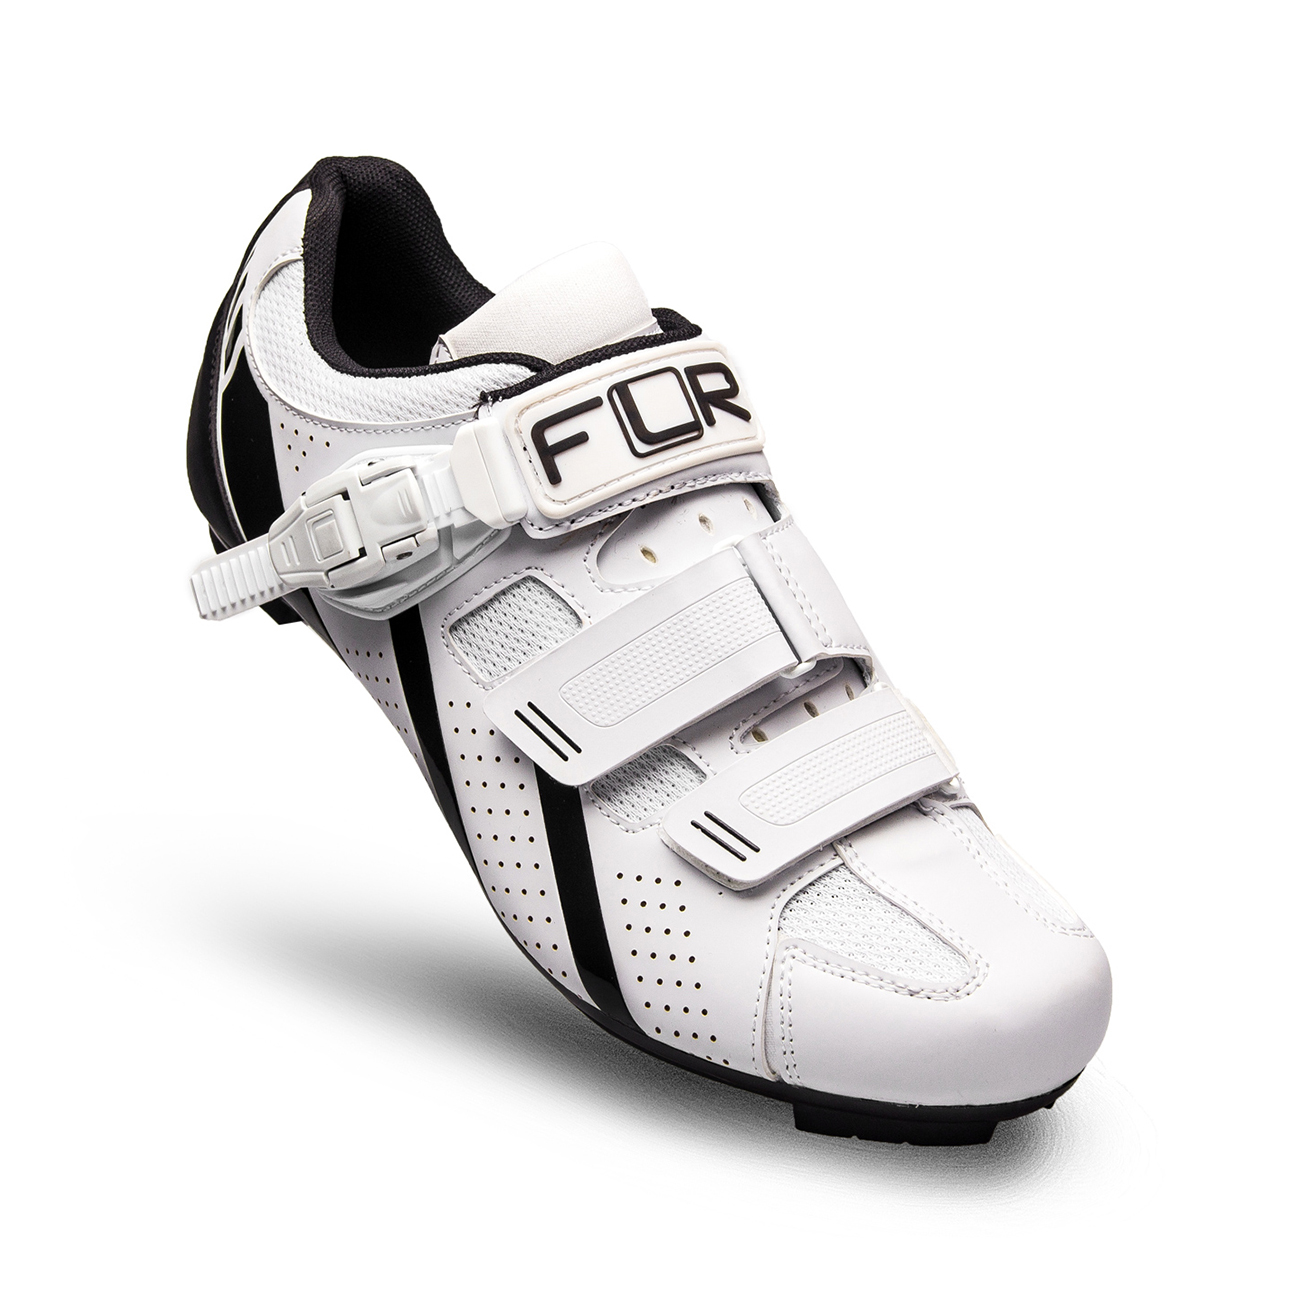 
                FLR Cyklistické tretry - F15 - čierna/biela 47
            